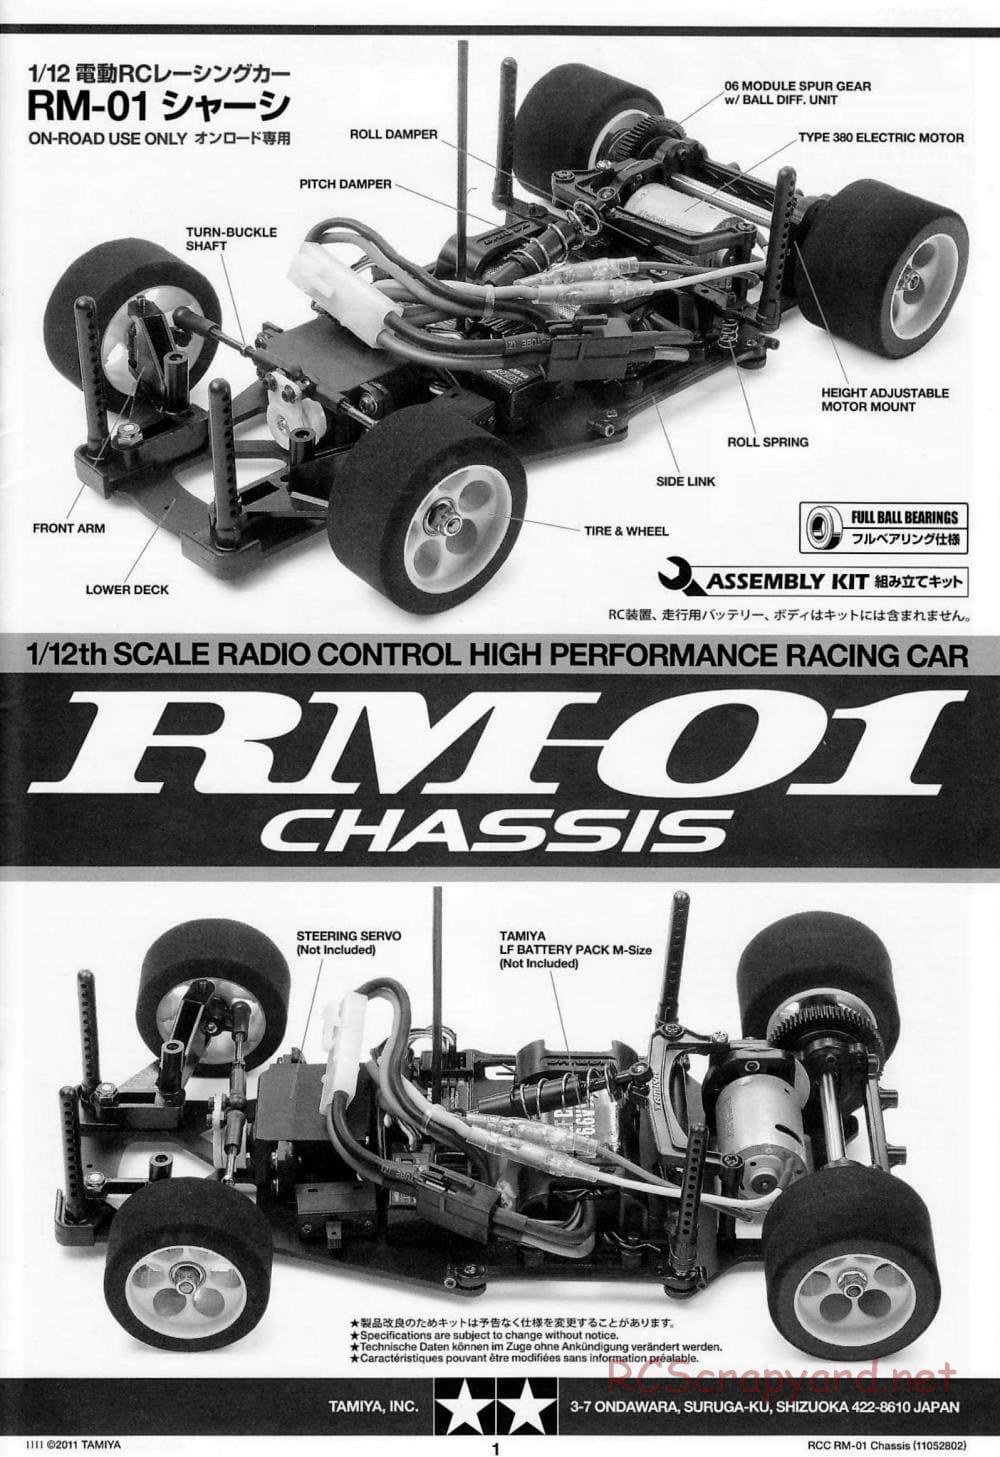 Tamiya - TA04-SS Chassis - Manual - Page 1